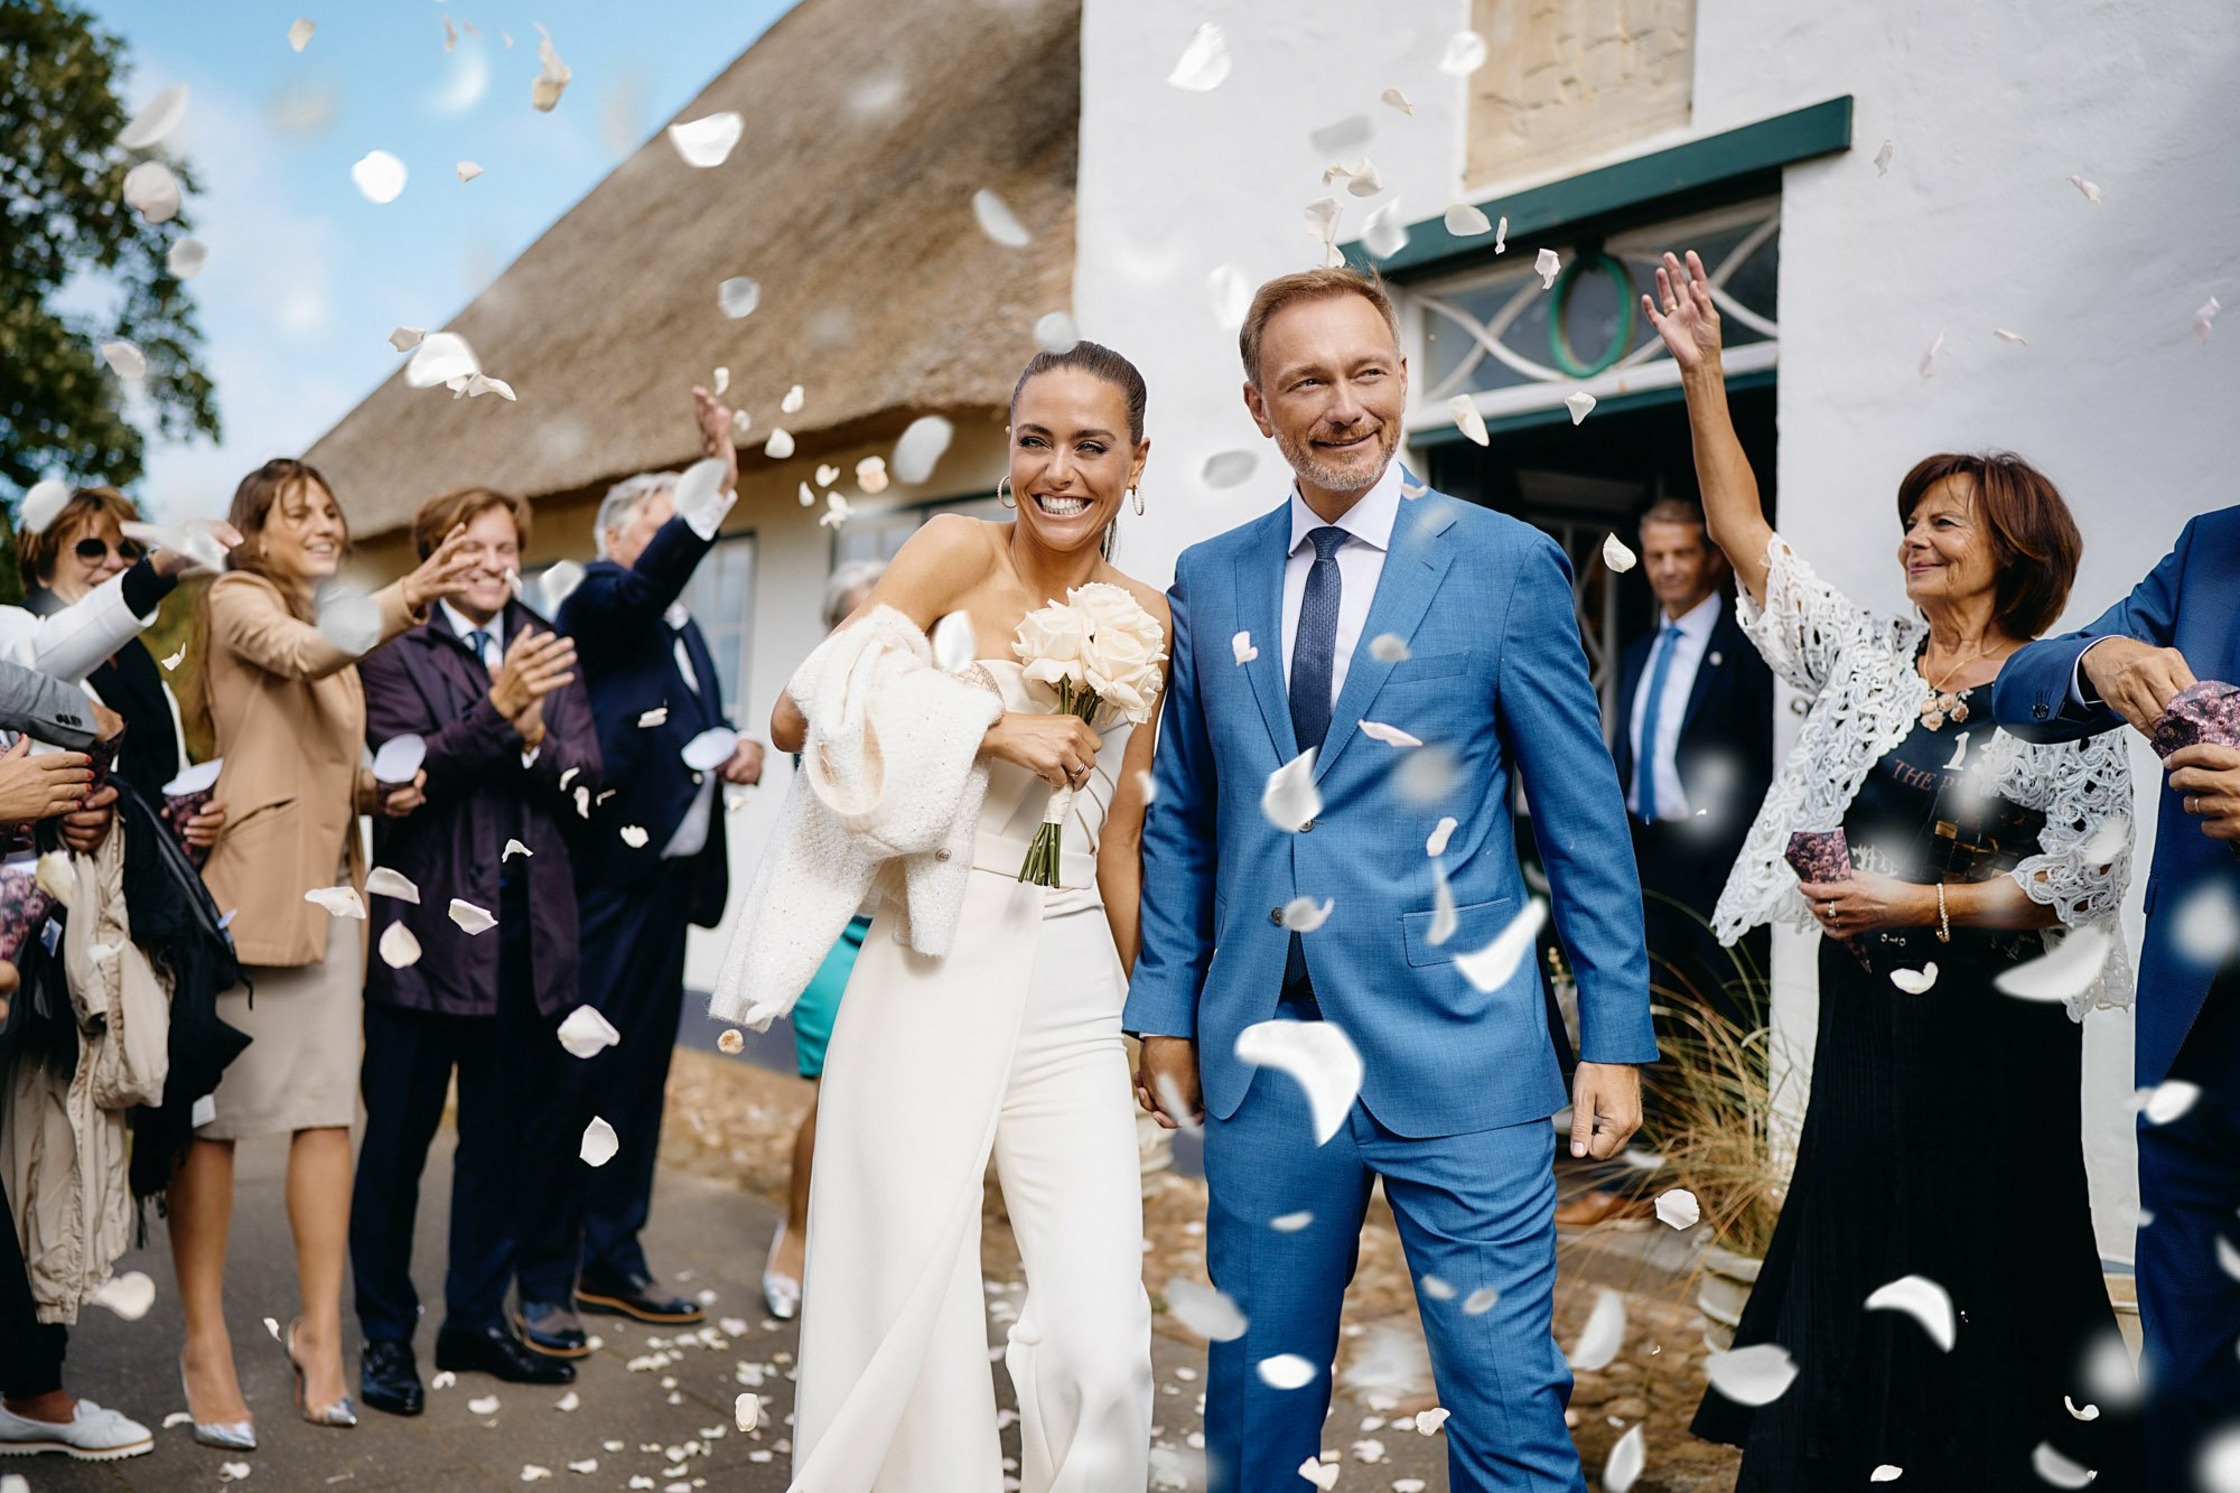 Hochzeit von Christian Lindner & Franca Lehfeldt auf der Nordseeinsel Sylt im Sommer 2022.